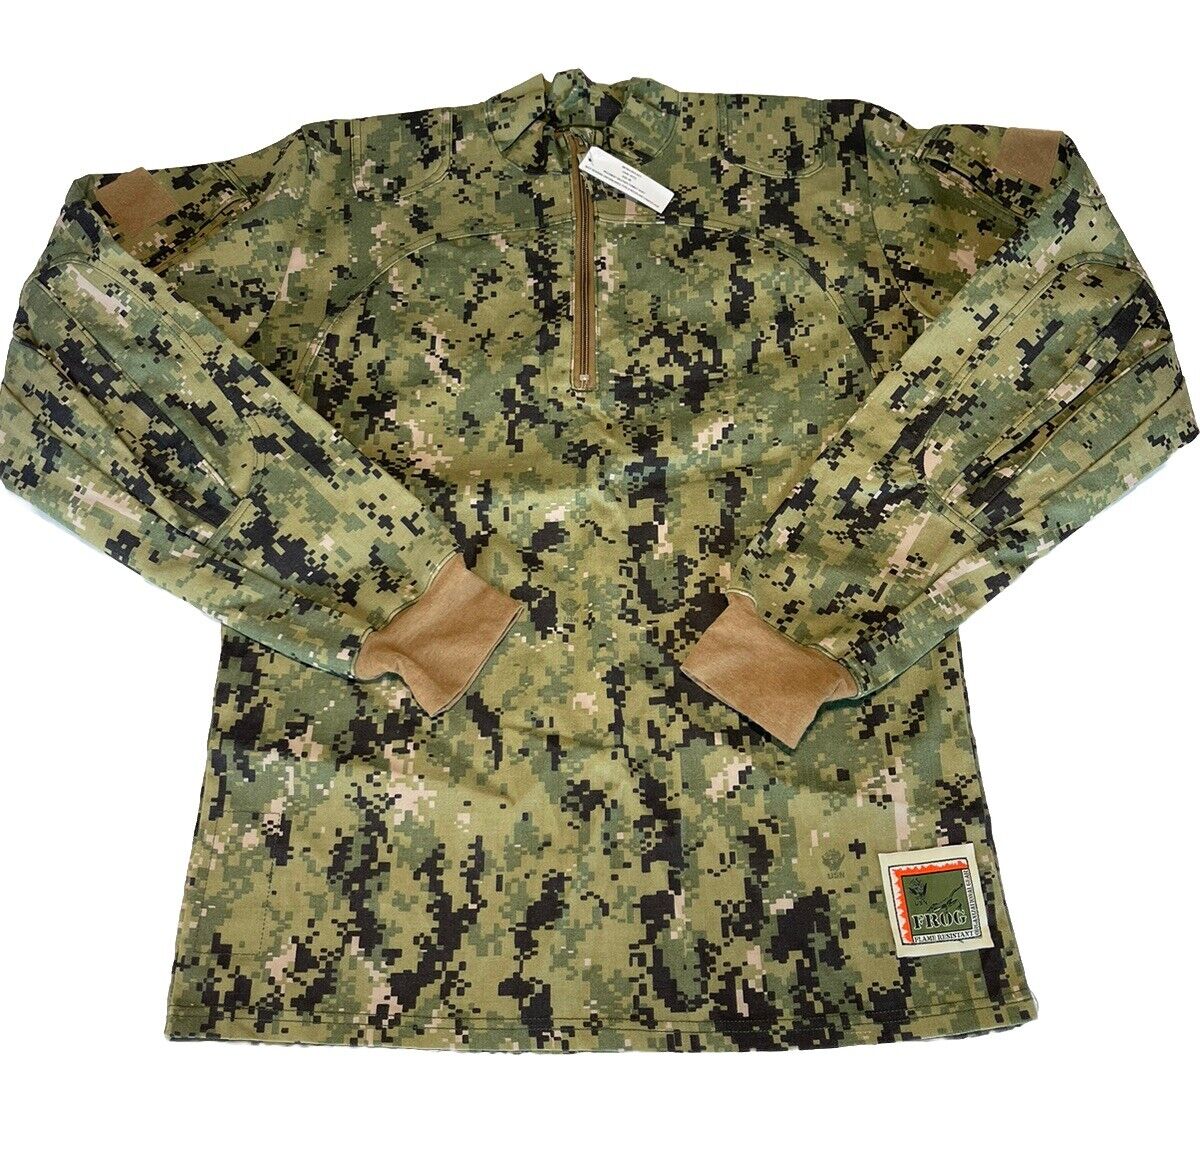 Navy Type III Inclement Weather Combat Shirt Medium Long NWU Woodland Camo FROG